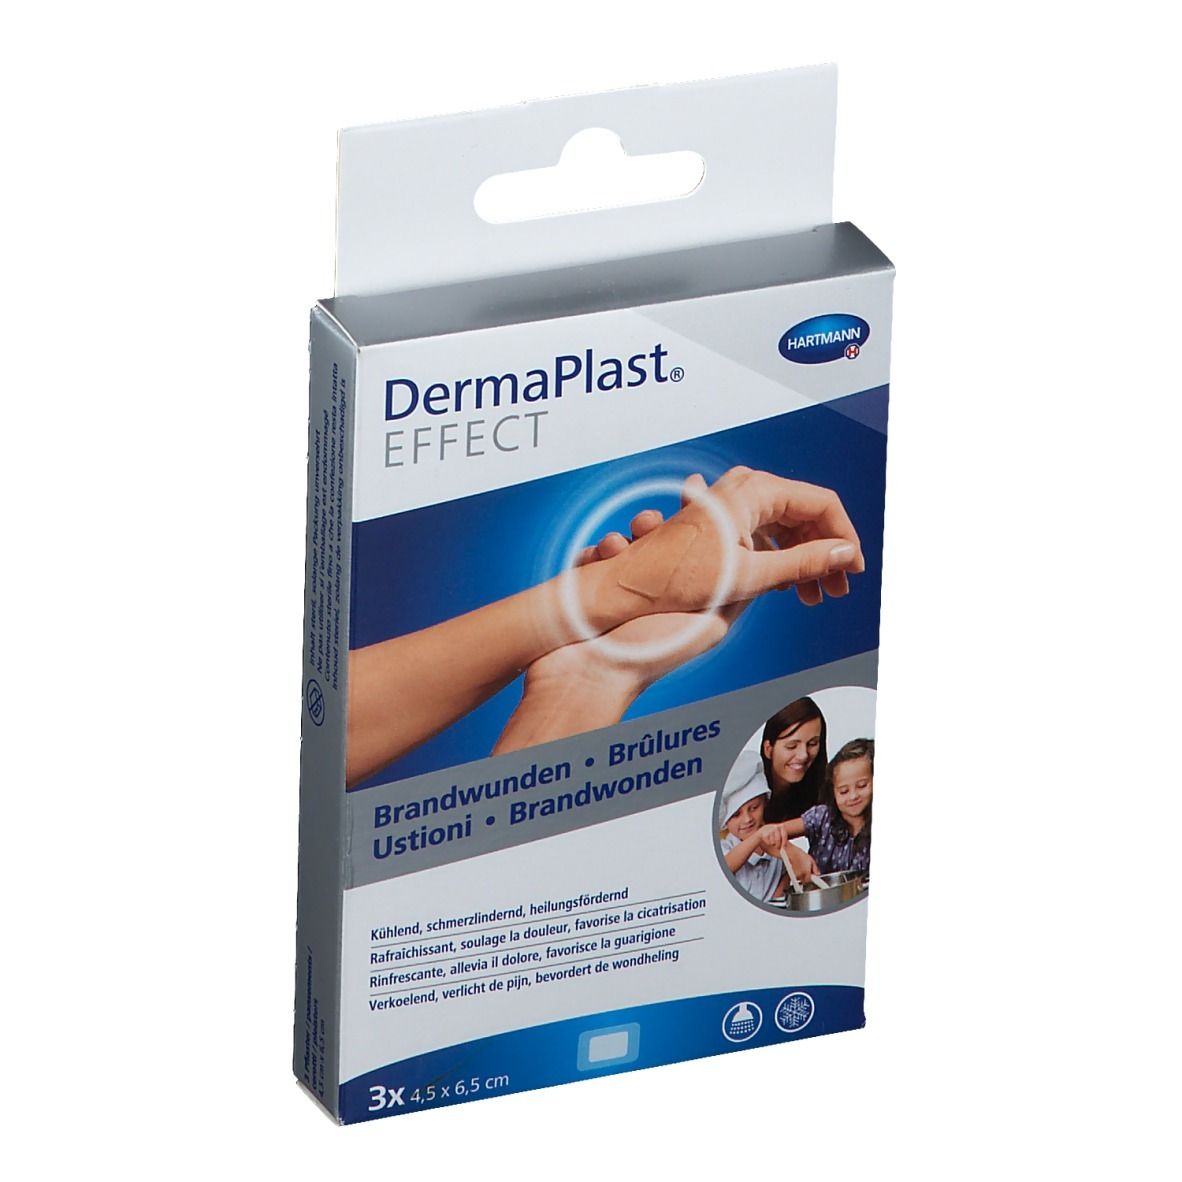 DermaPlast® EFFECT Brandwunden 4,5 x 6,5 cm